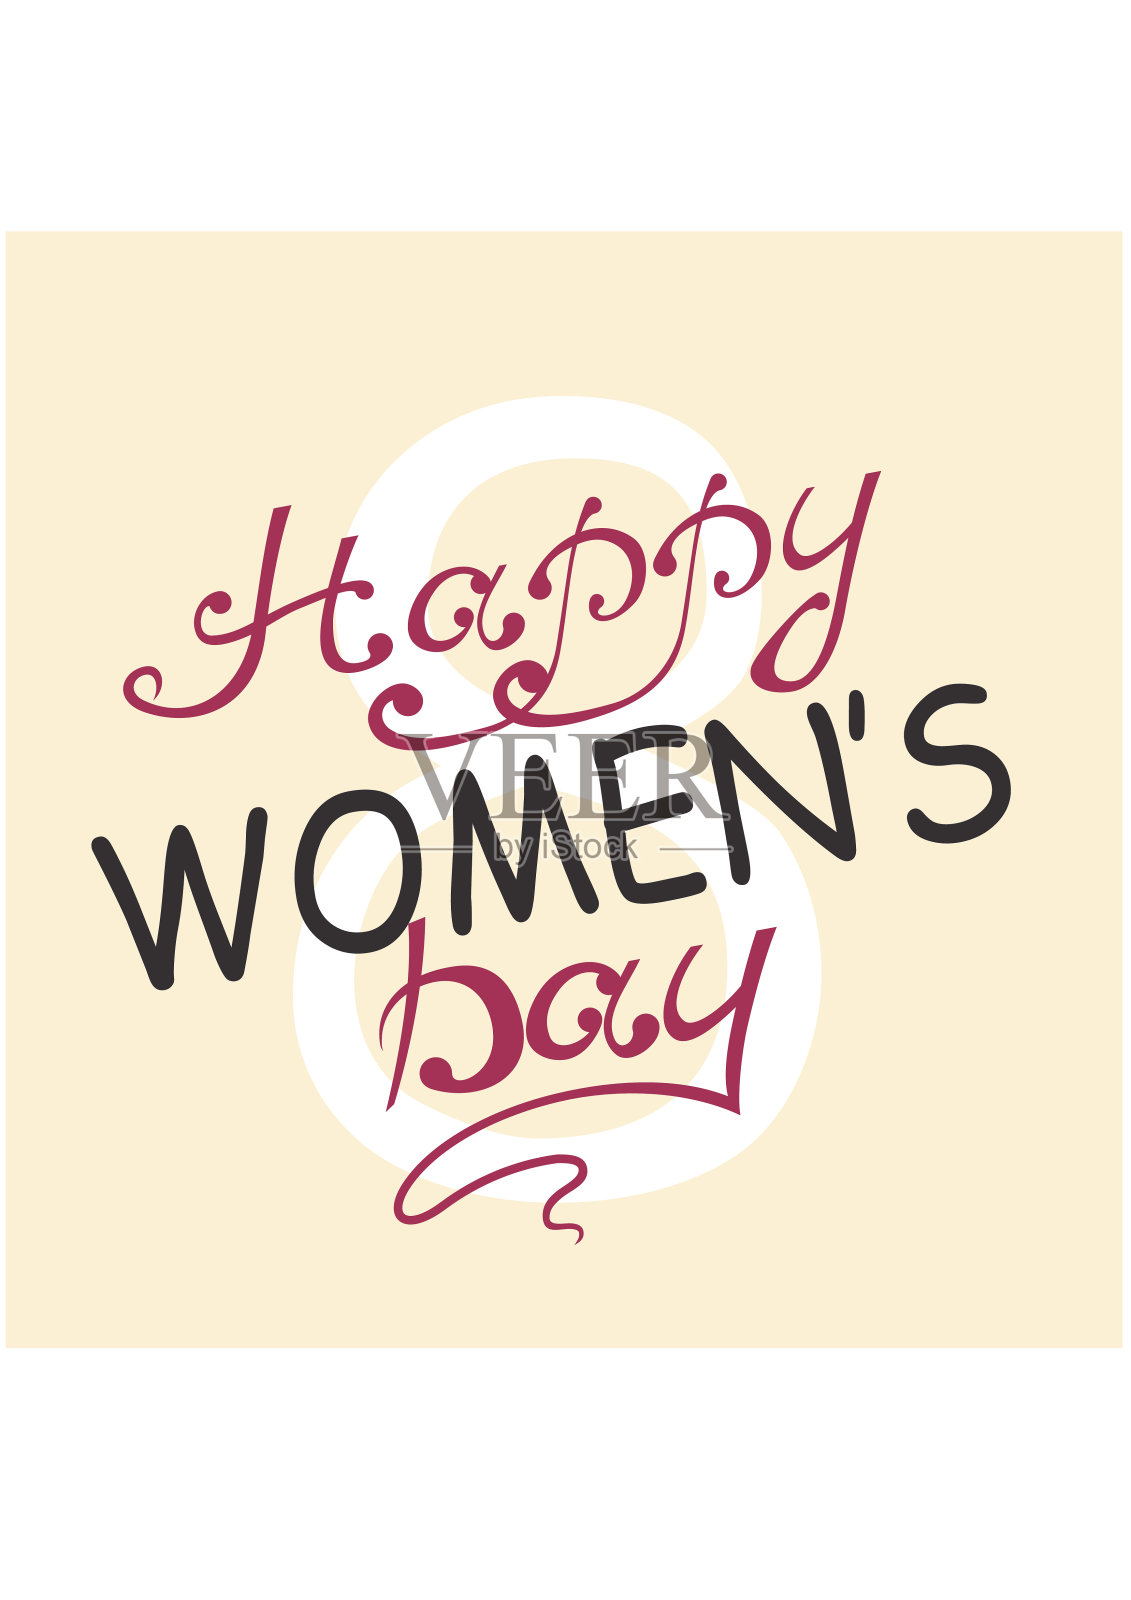 国际妇女节。3月8日为庆祝贺卡插画图片素材